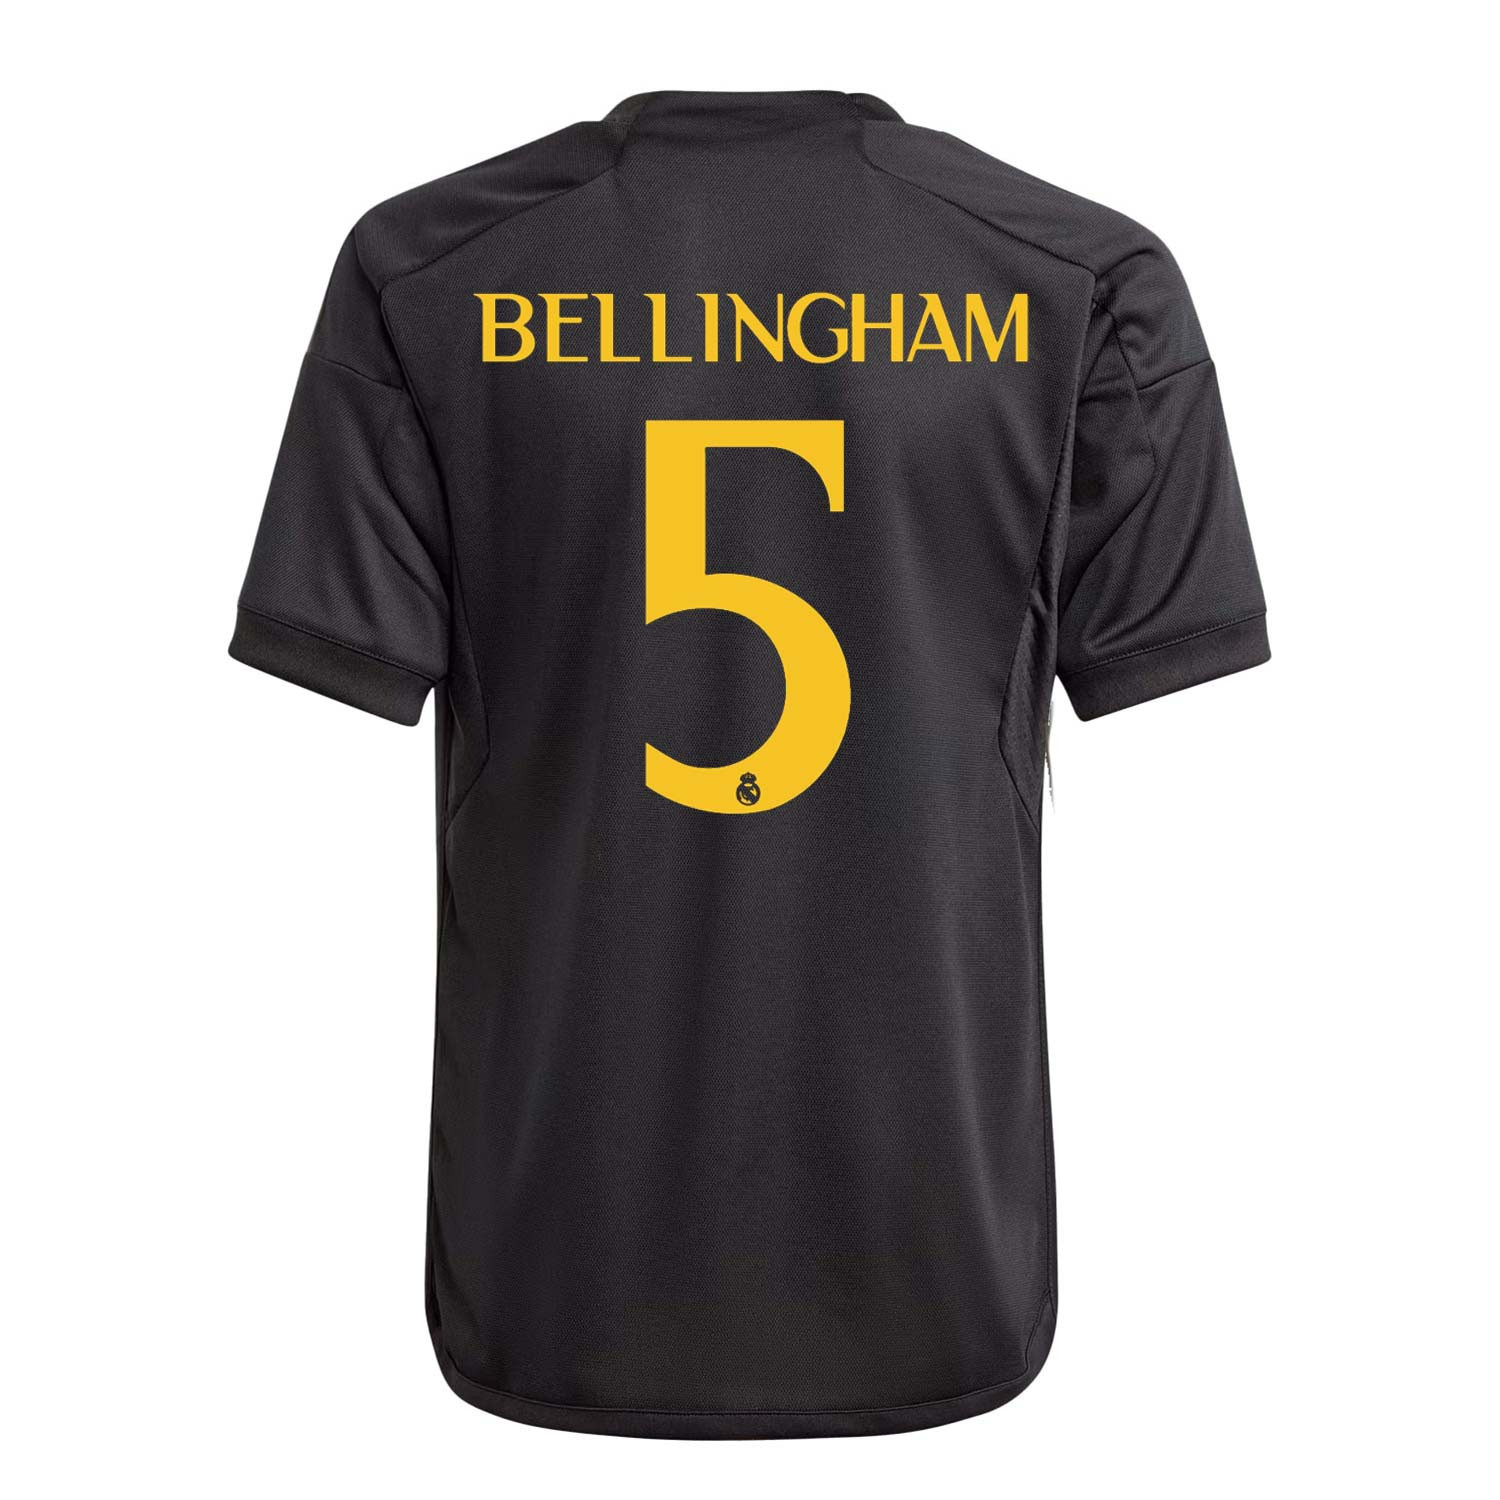 Camiseta adidas 3a Real Madrid Bellingham niño 2023 2024 negra